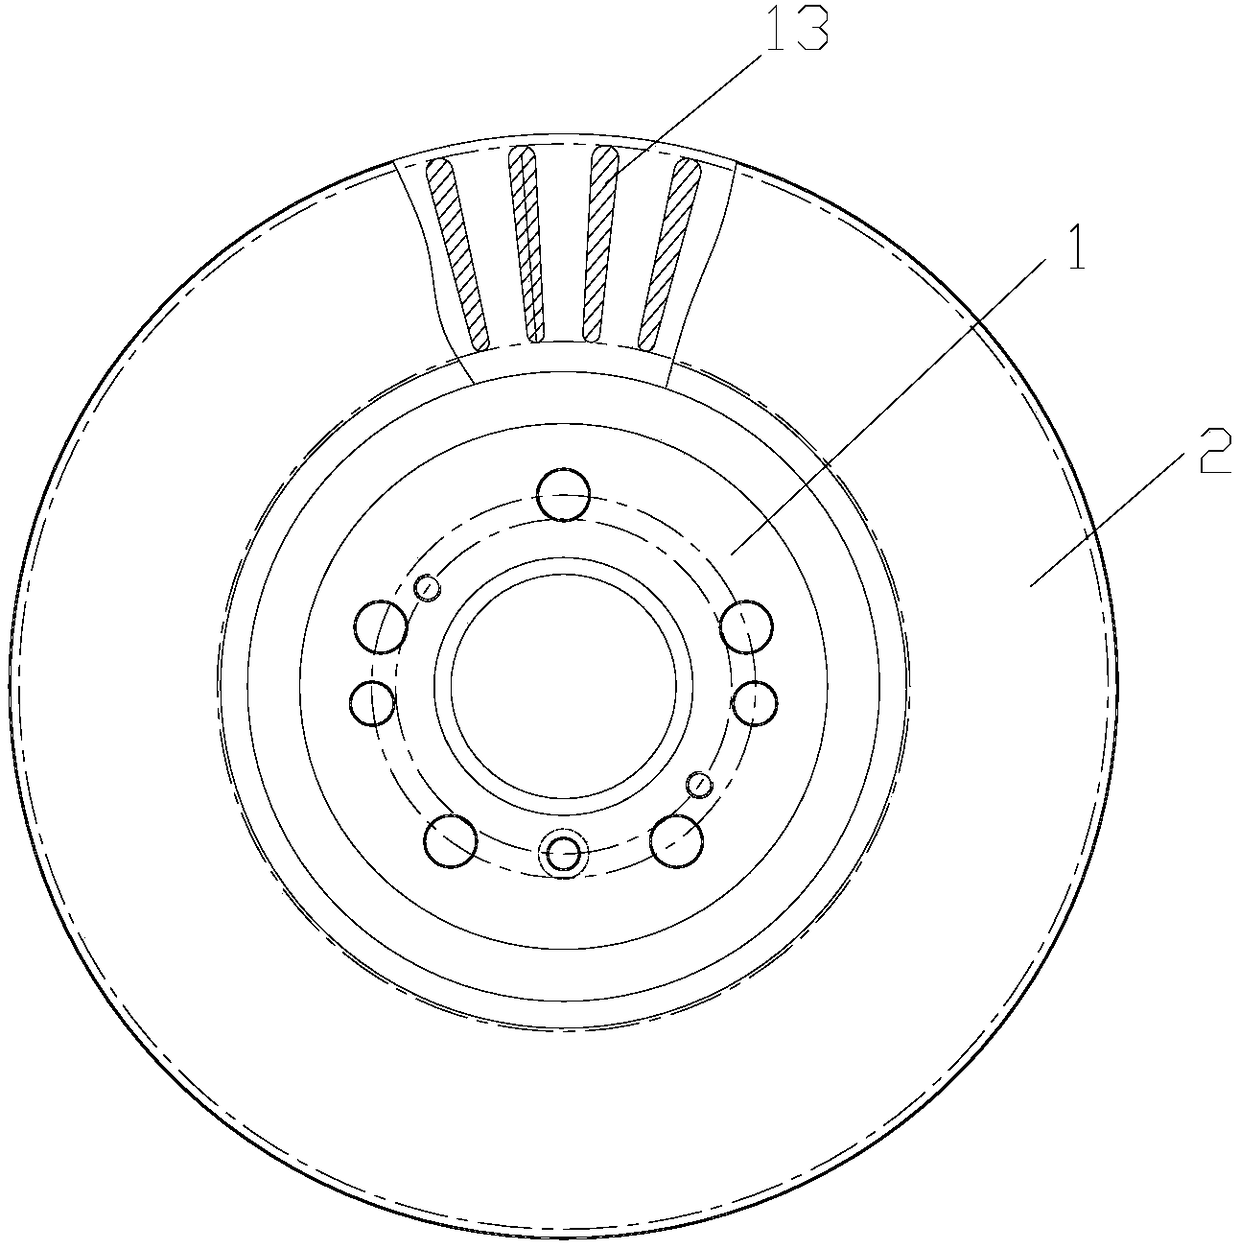 Manufacturing method of vehicle brake disc